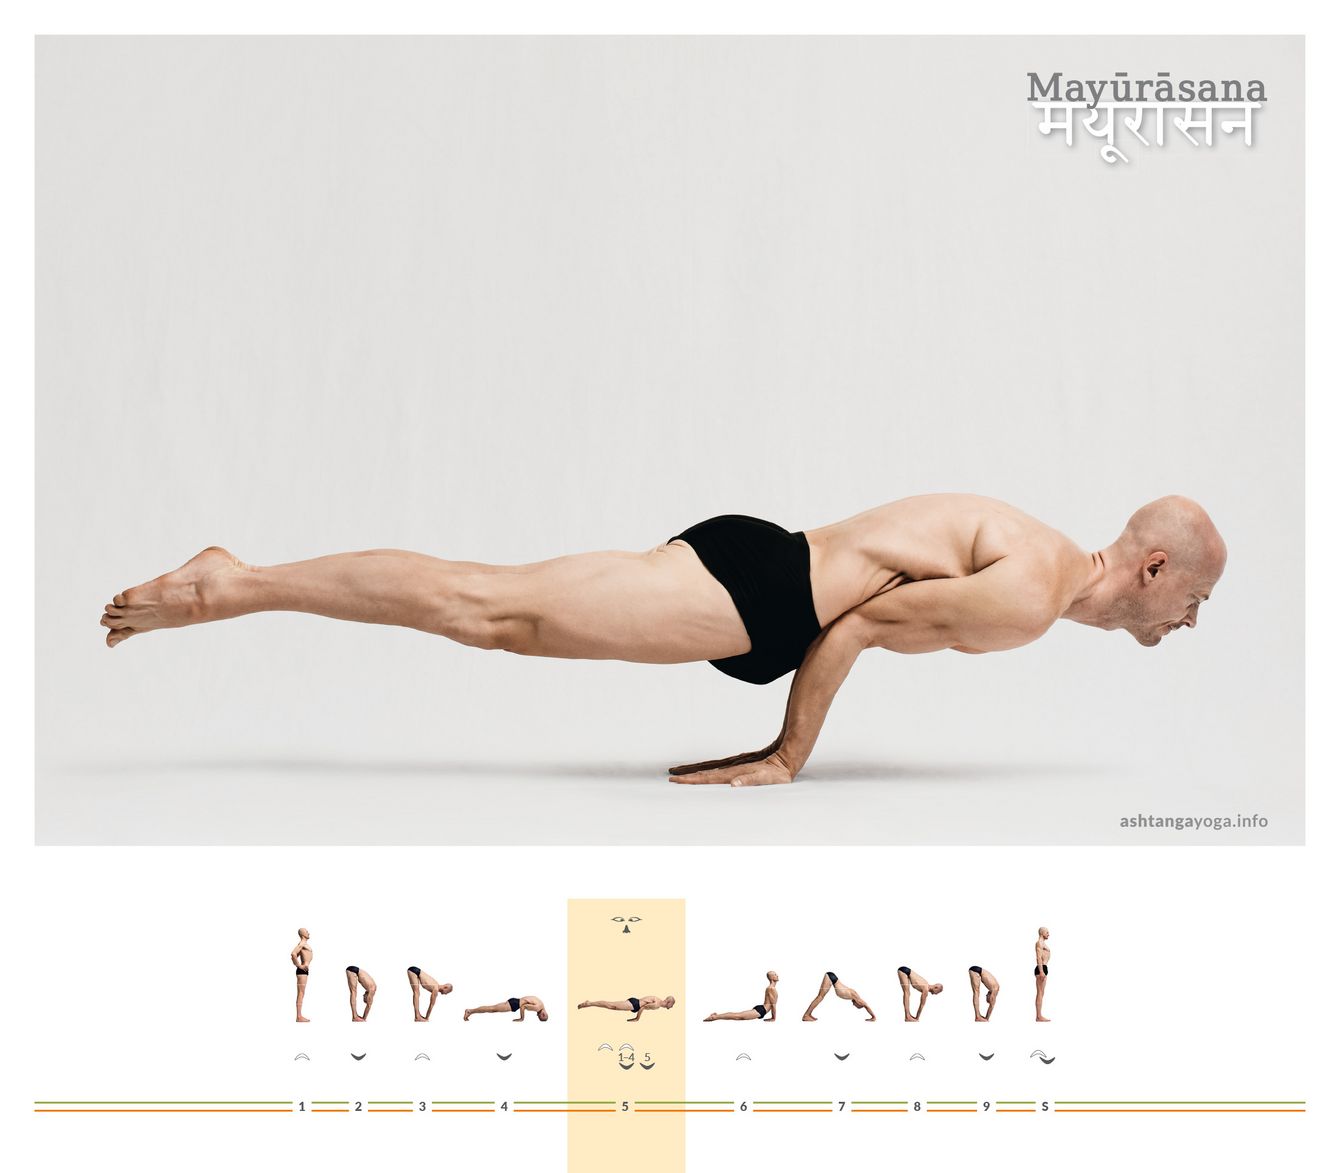 Im “Pfau” sind die Hände nach hinten weisend auf dem Boden aufgestützt. Der Körper balanciert horizontal und gestreckt auf den gebeugten Ellenbogen - Mayurasana.